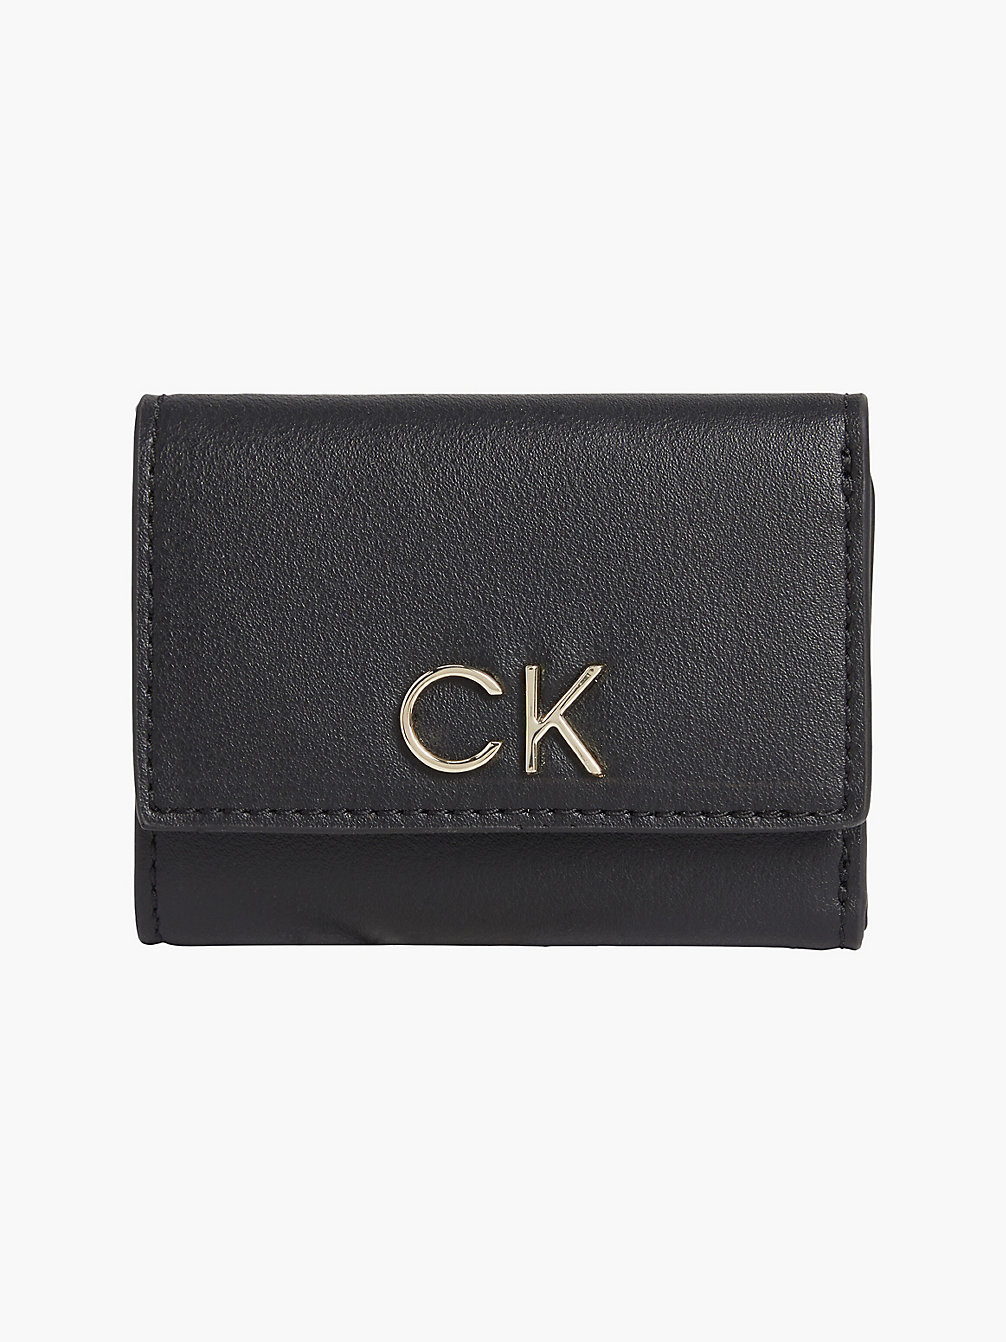 CK BLACK > Мини-бумажник тройного сложения > undefined Женщины - Calvin Klein